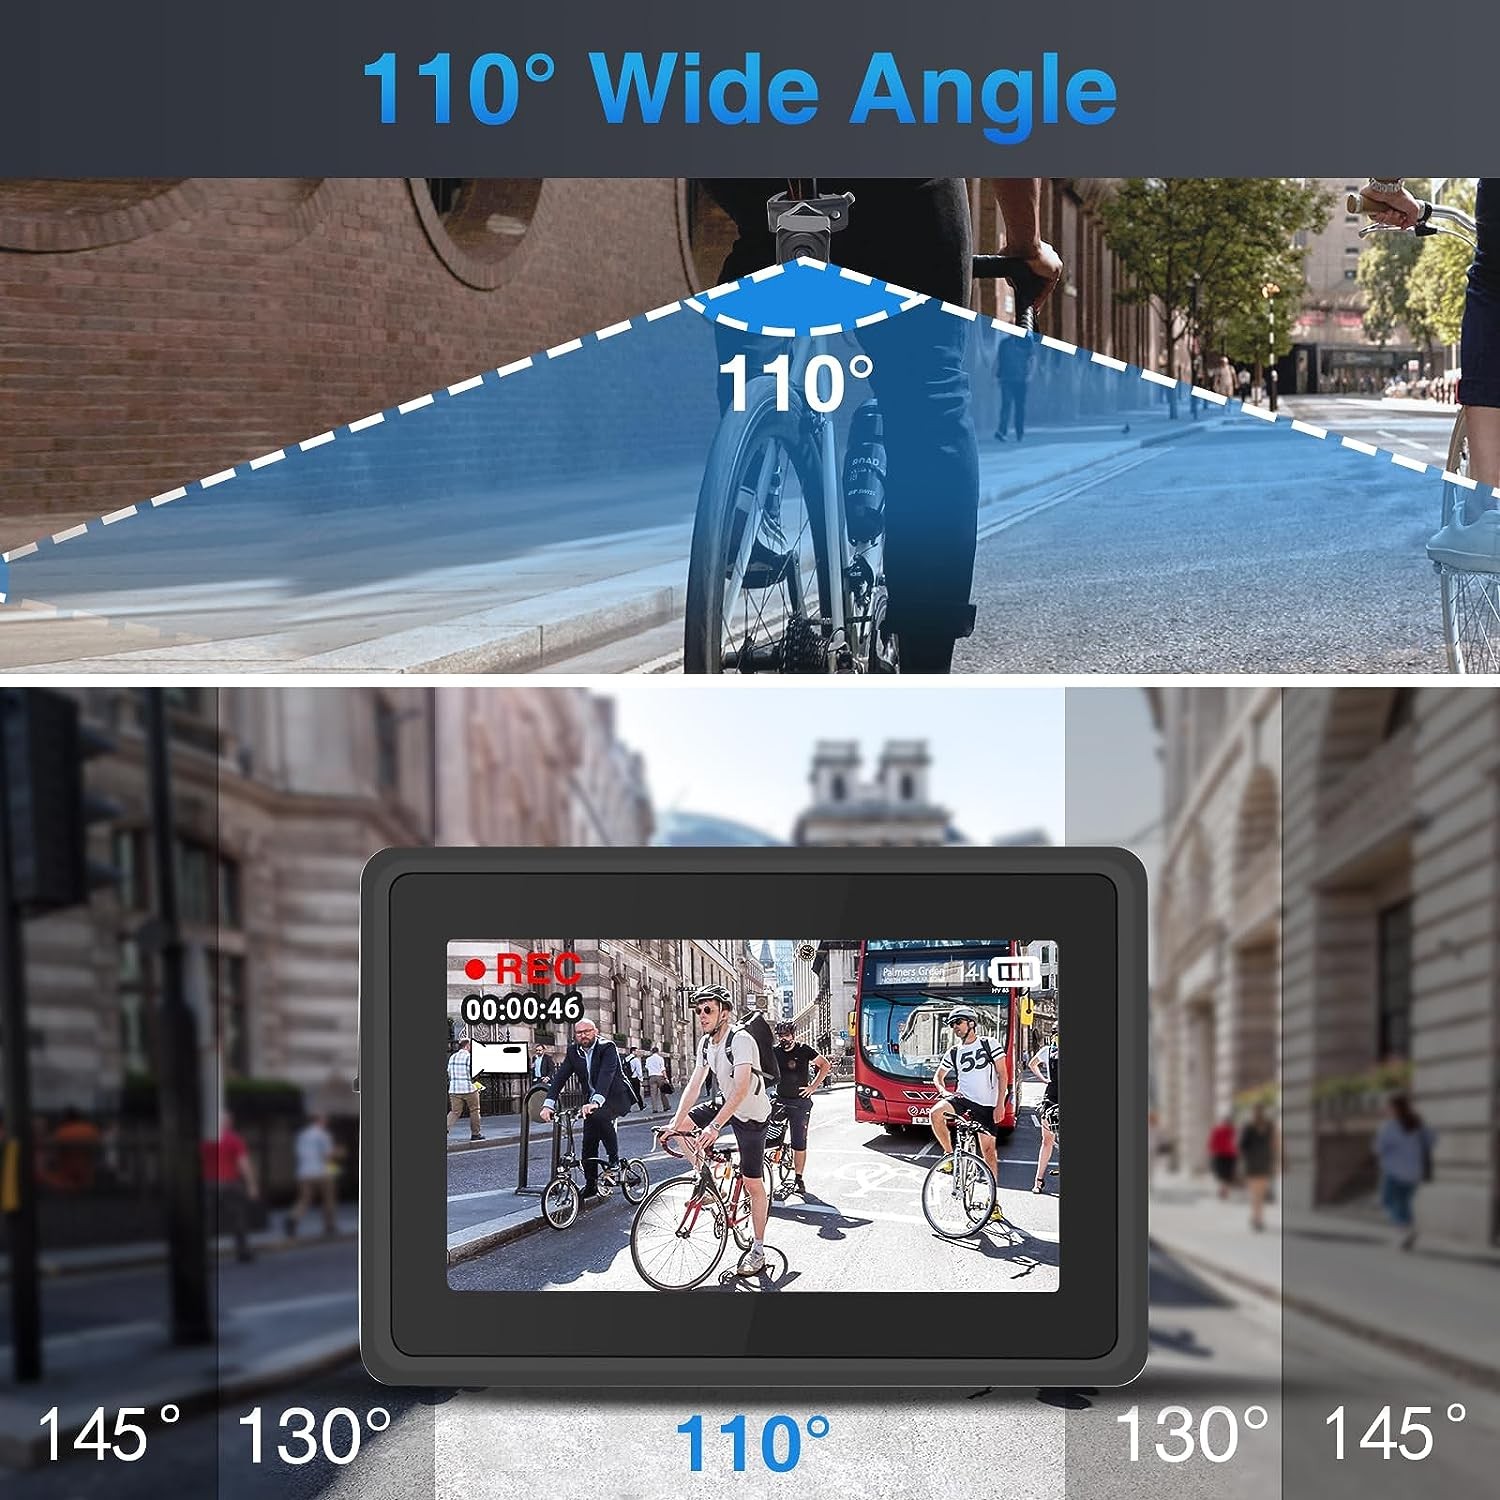 kerékpár kamera betekintési szöge 110 fok + monitor